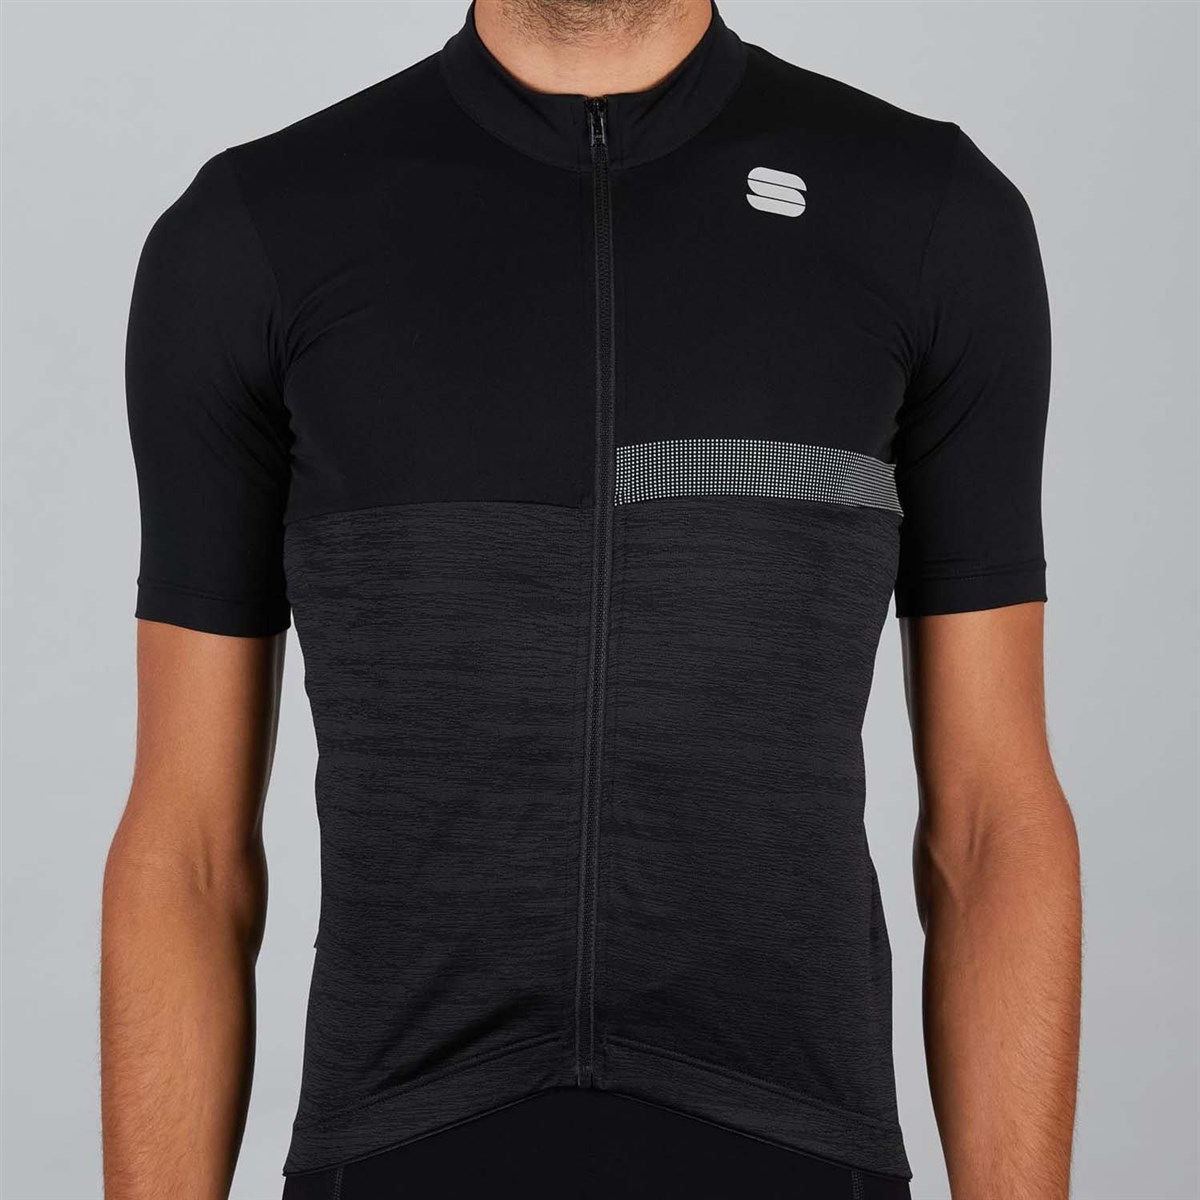 Sportful Giara Short Sleeve Jersey product image